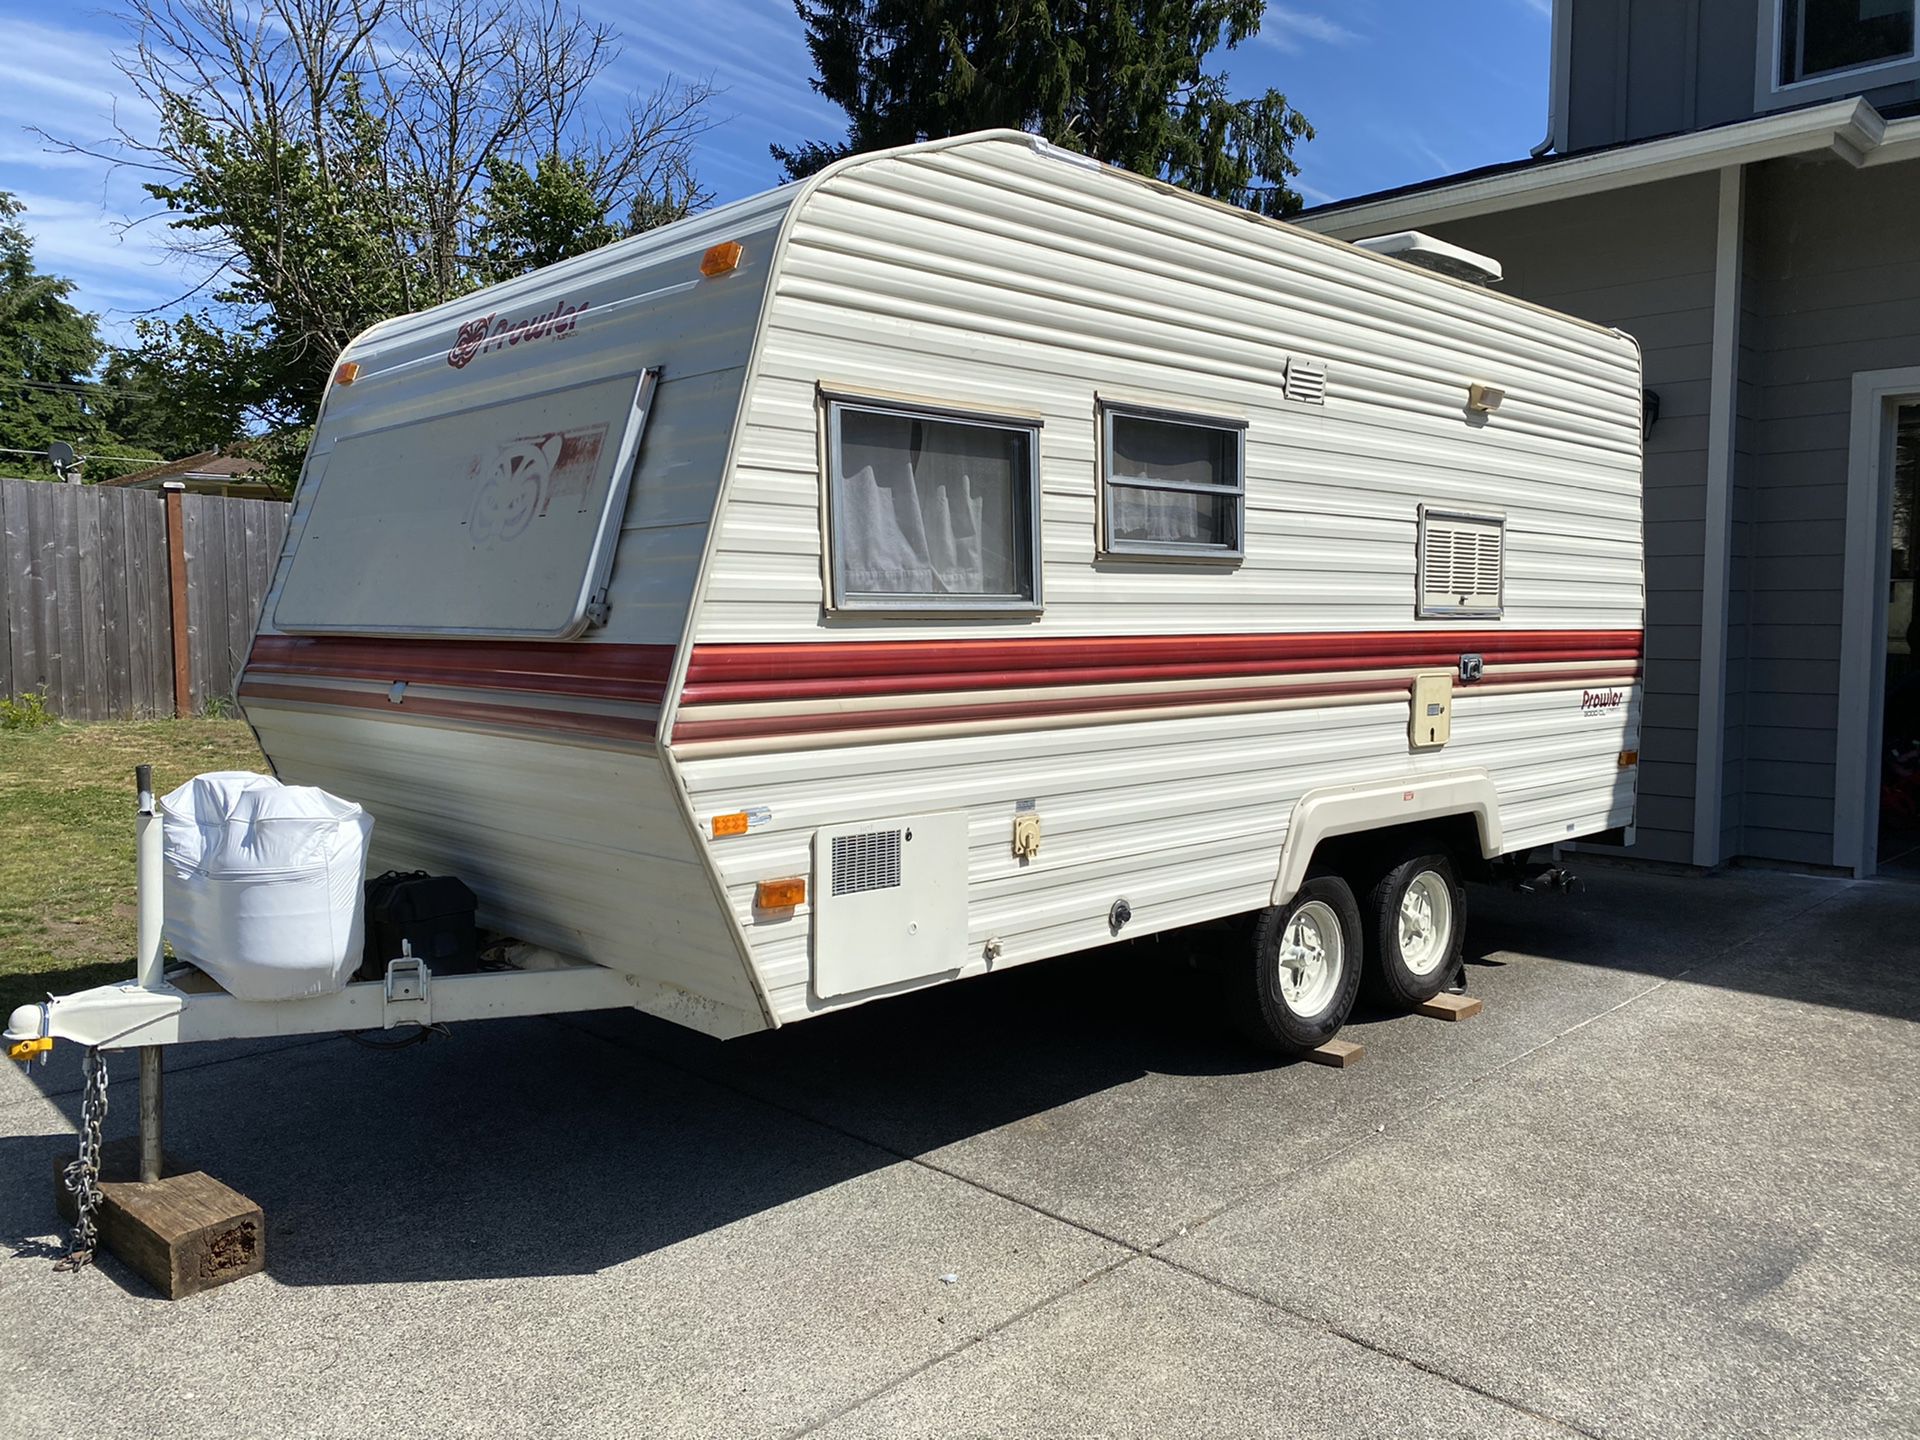 1984 Fleetwood Prowler 16’ (vintage camper / travel trailer)